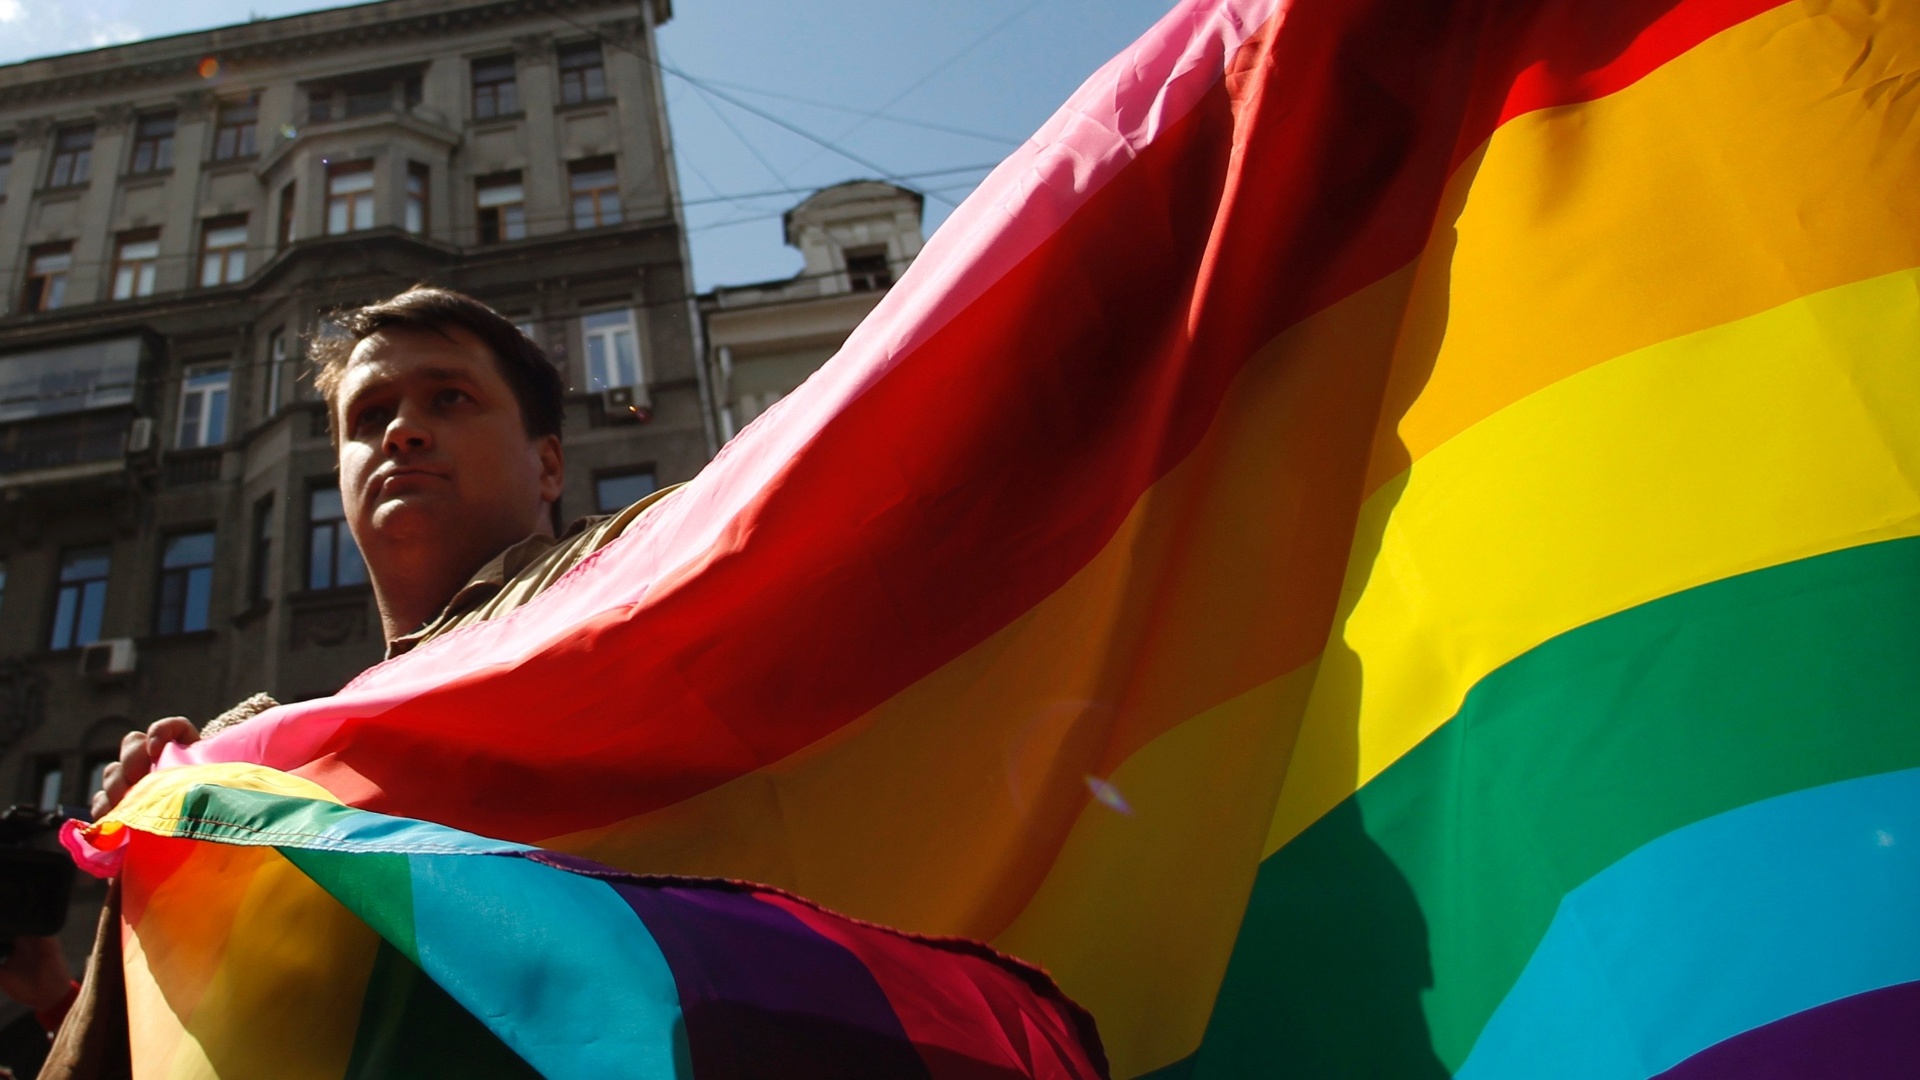 Fotos Militantes São Presos E Agredidos Em Parada Gay Na Rússia 27052012 Uol Notícias